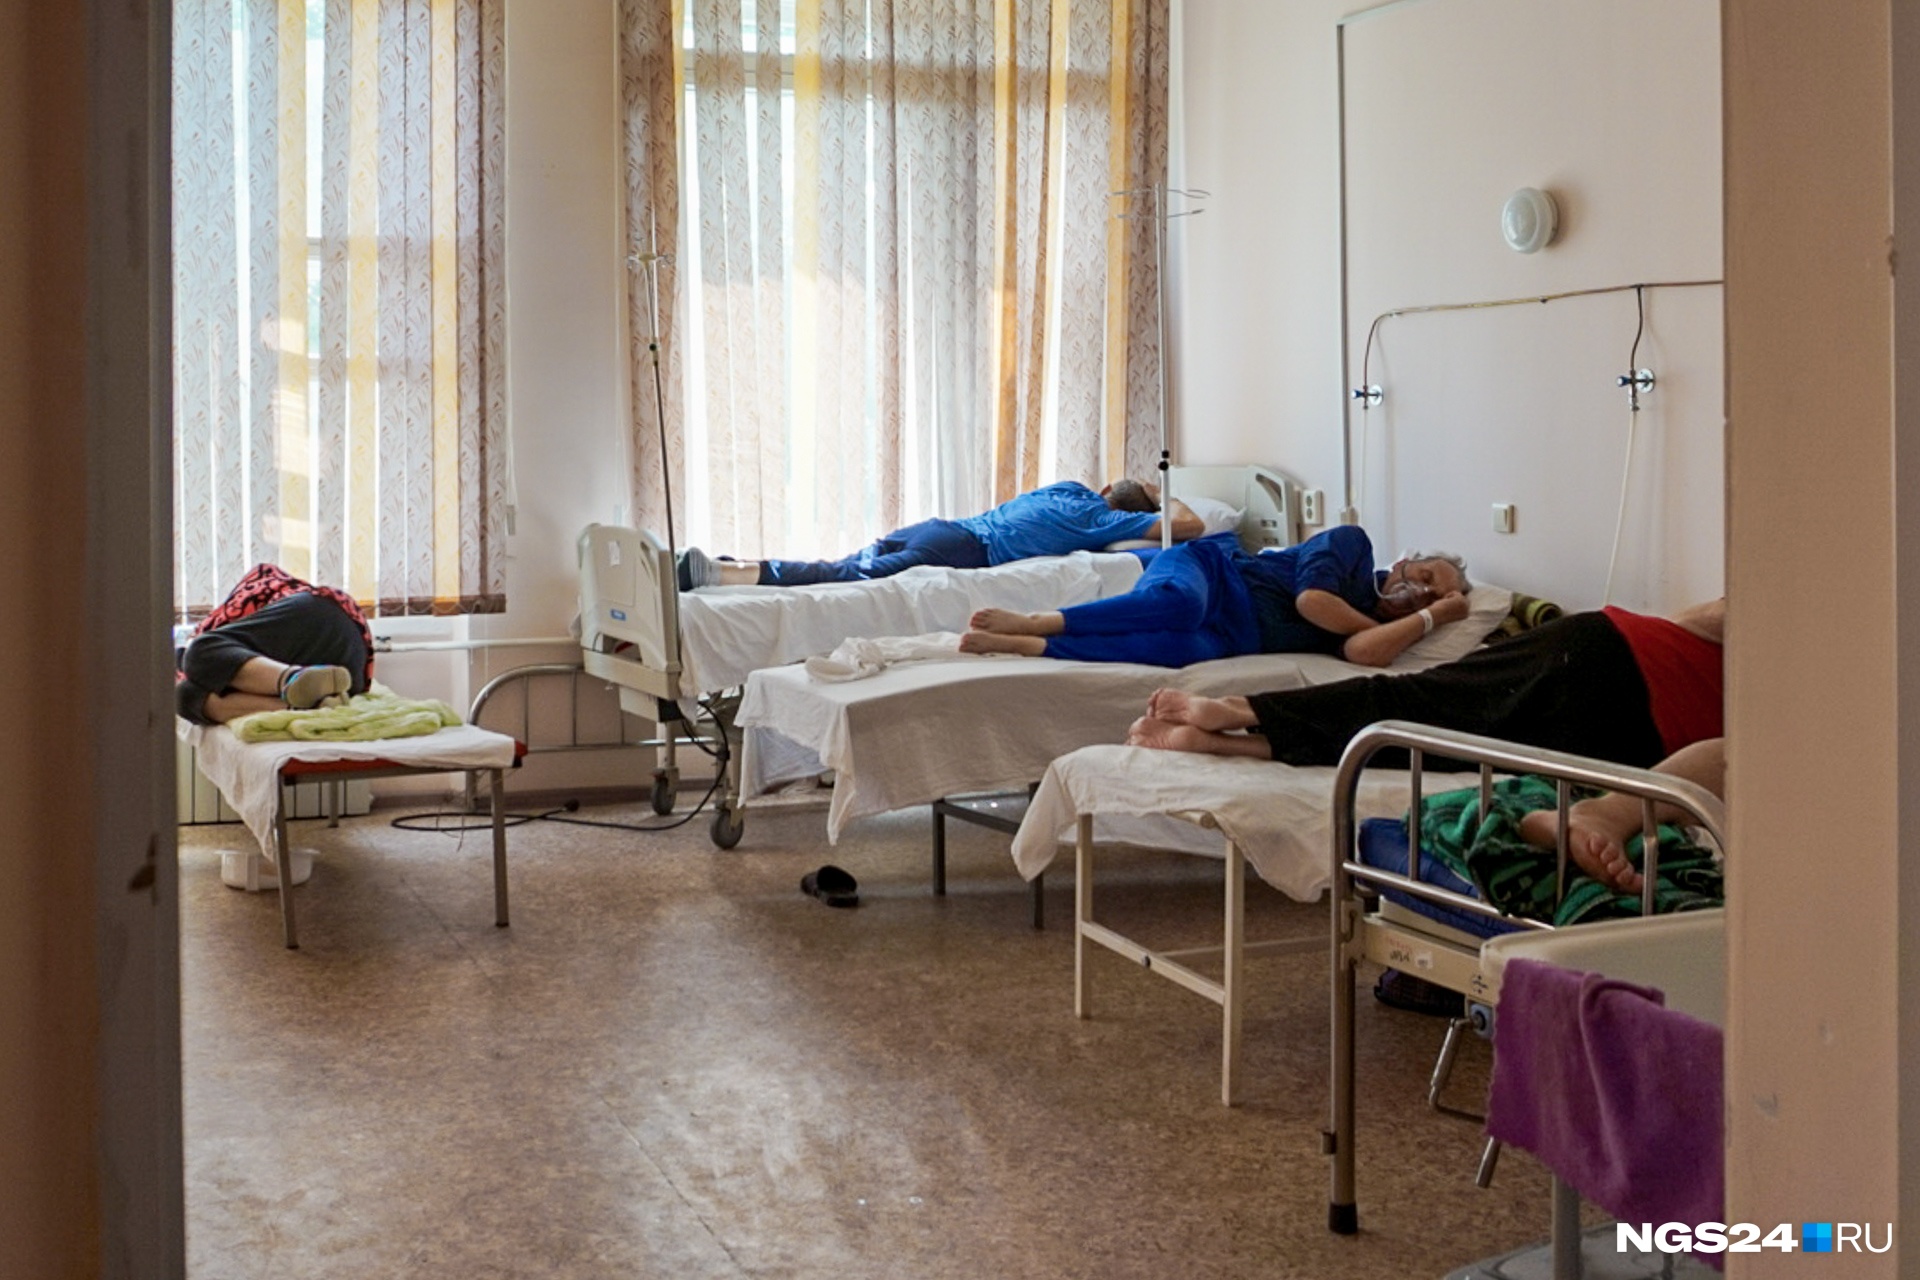 Пациенты ковид-госпиталя в основном лежат — они даже ничего не читают и не смотрят. У многих попросту нет на это сил